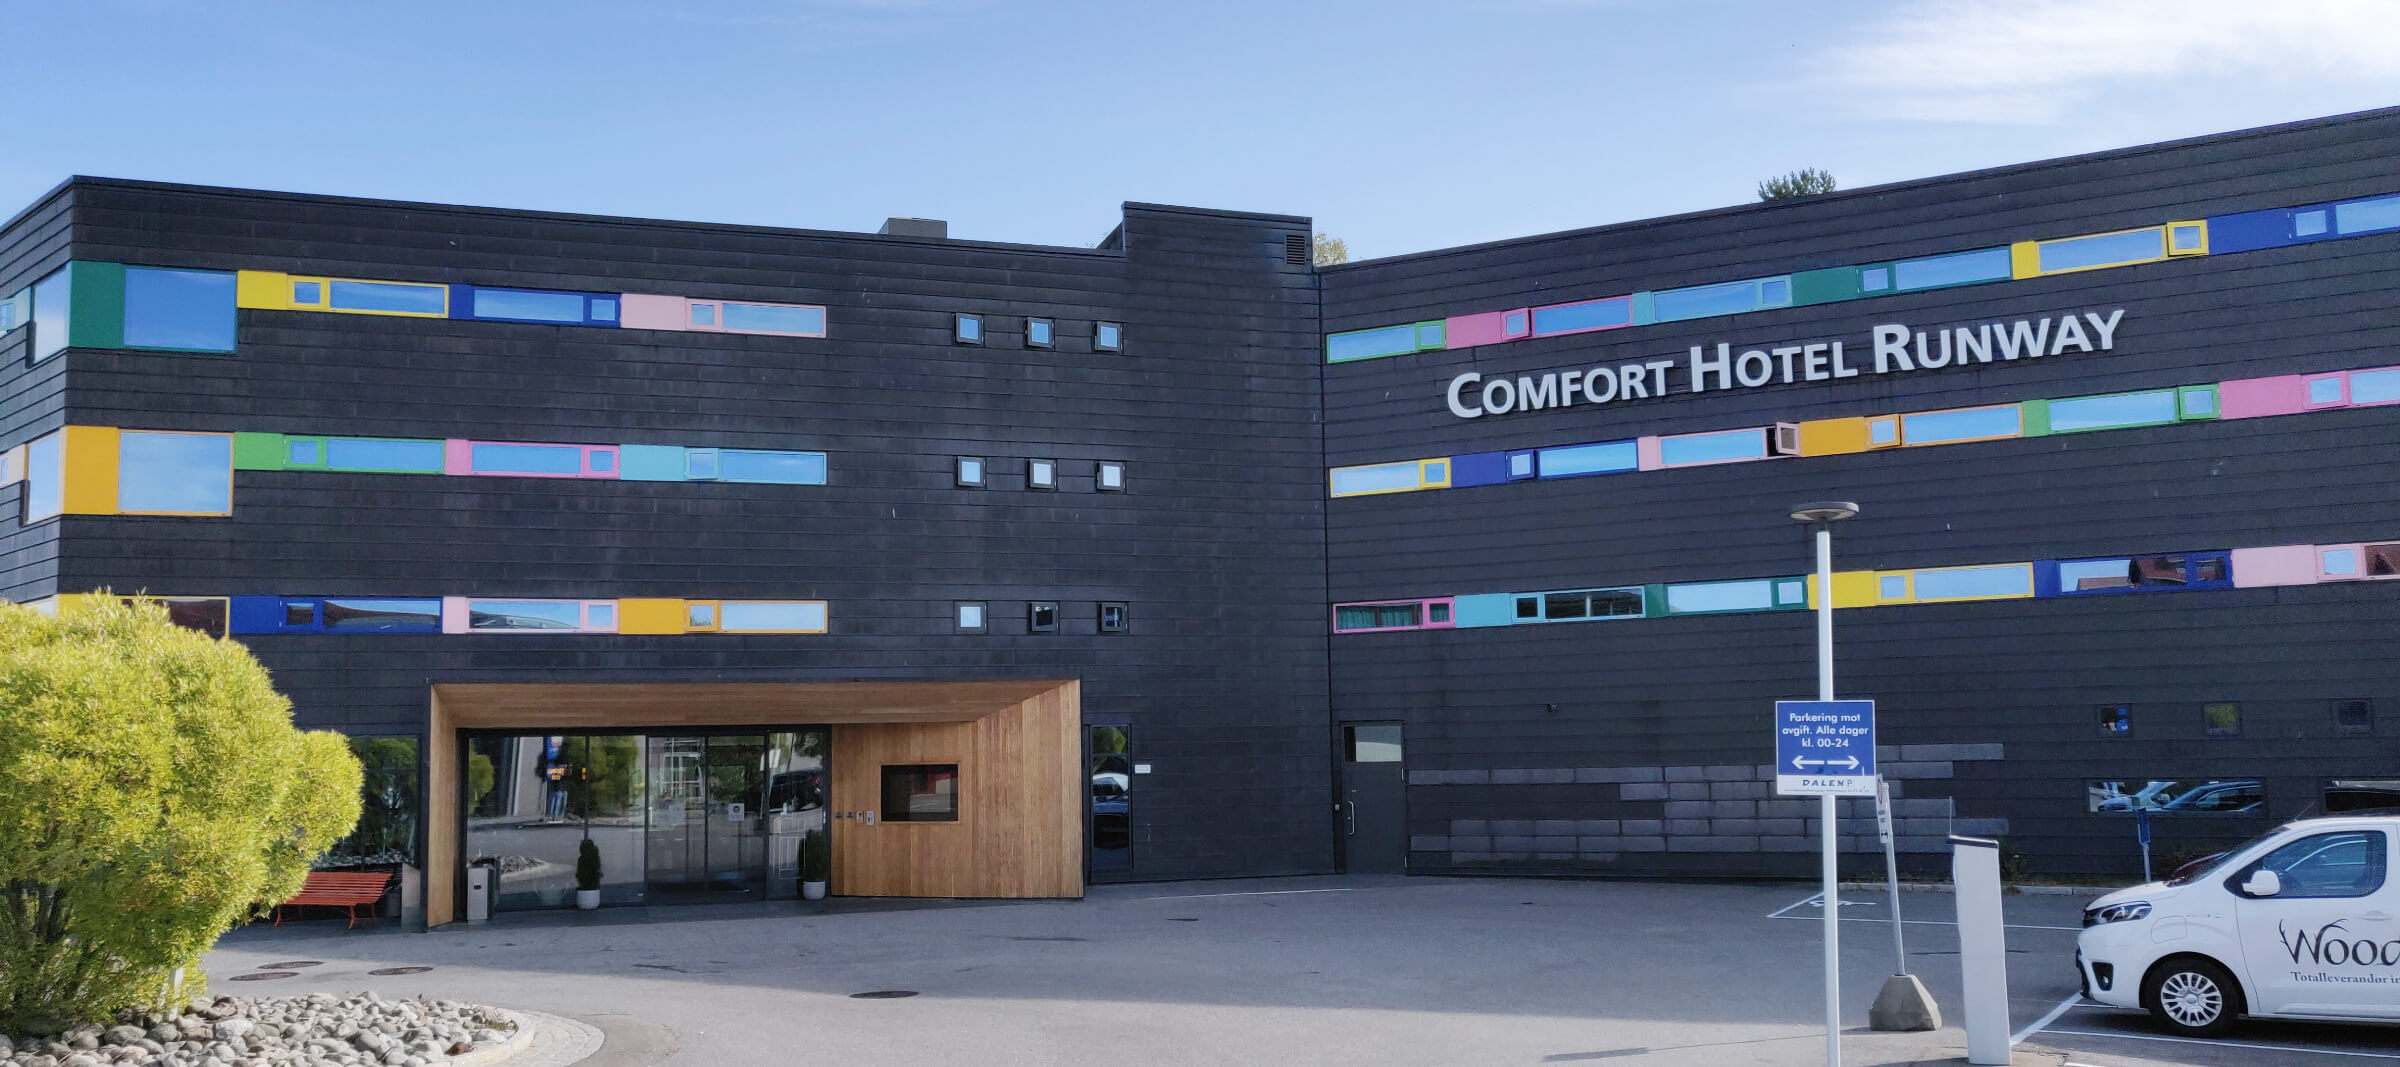 Comfort Hotel Runway, Gardermoen